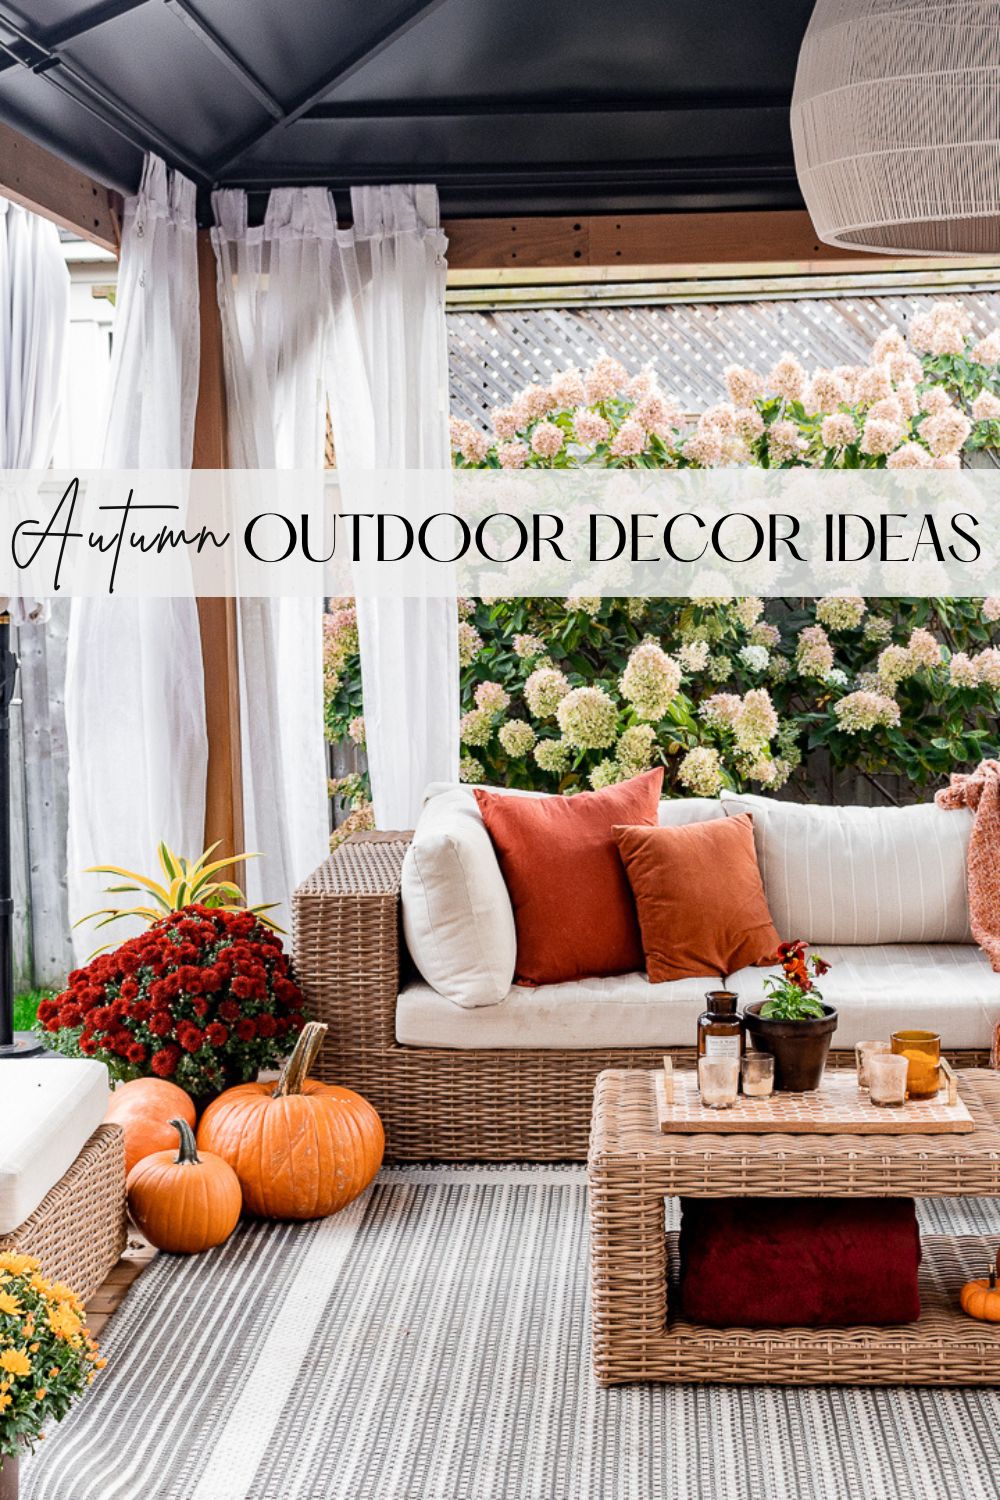 Autumn outdoor curtain decor ideas